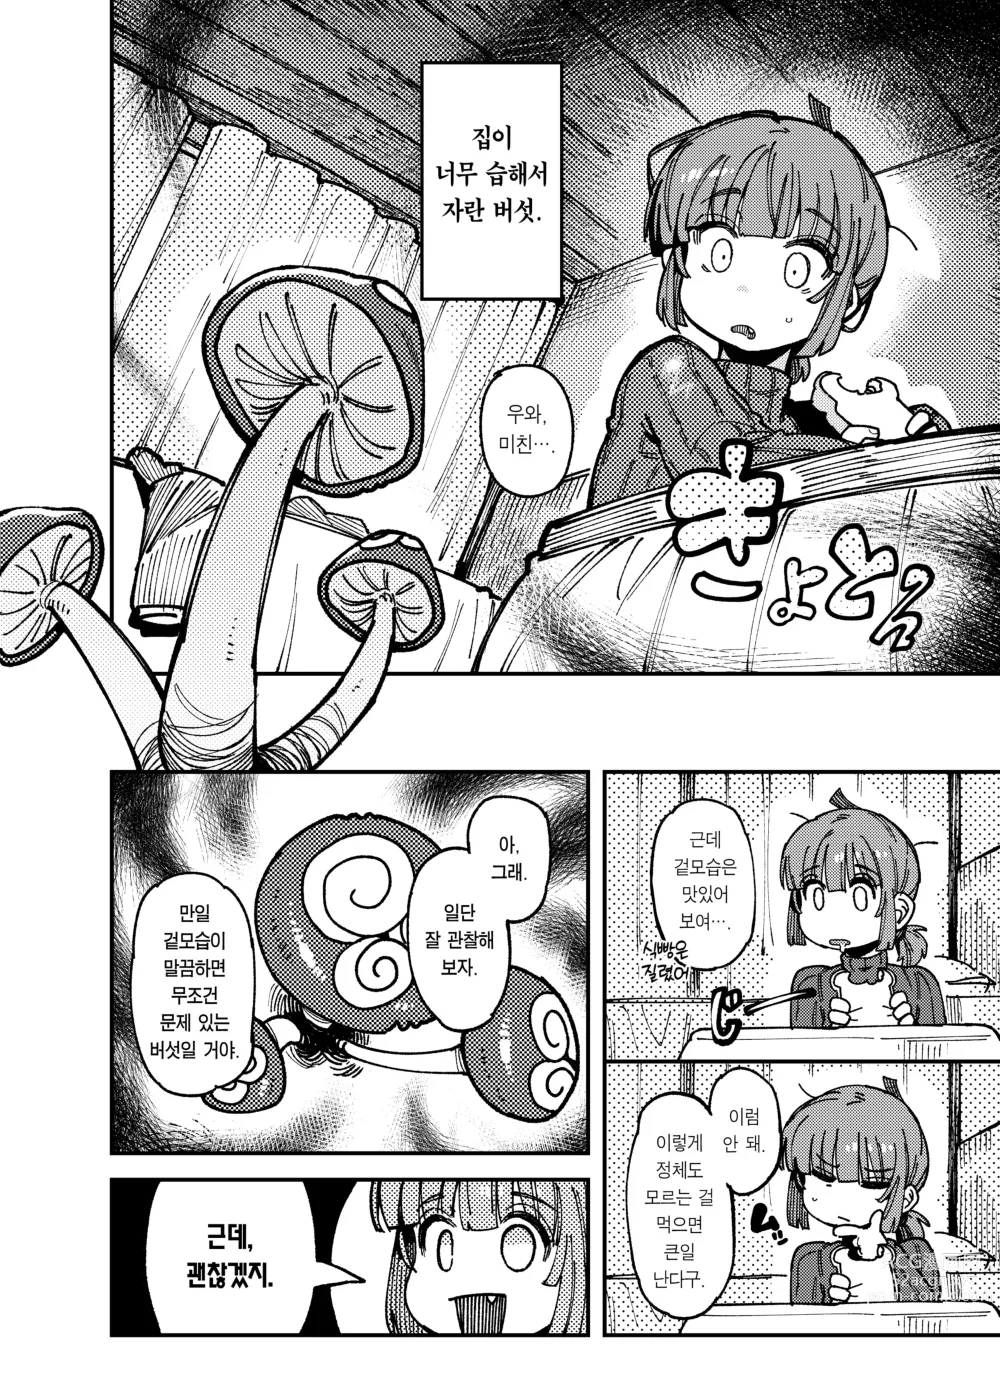 Page 4 of doujinshi 집이 너무 습해서 자란 환각을 유발하는 버섯을 잘못 먹고 발정이 나서 생긴 일들